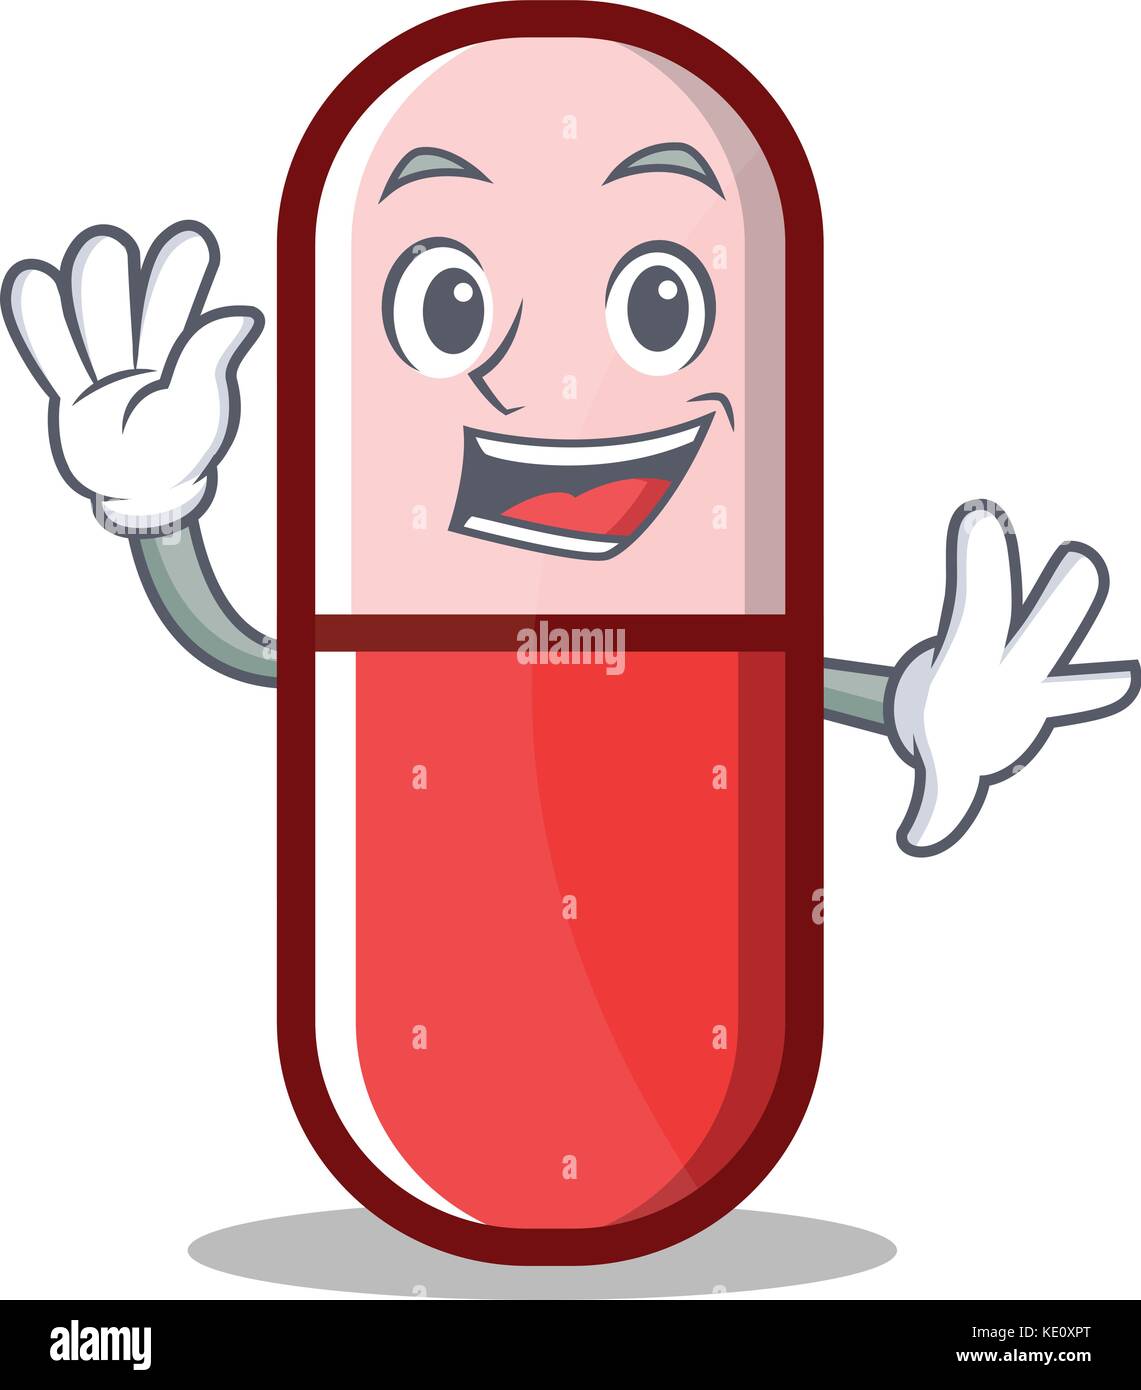 Waving pill capsule cartoon character Stock Vector Image & Art - Alamy